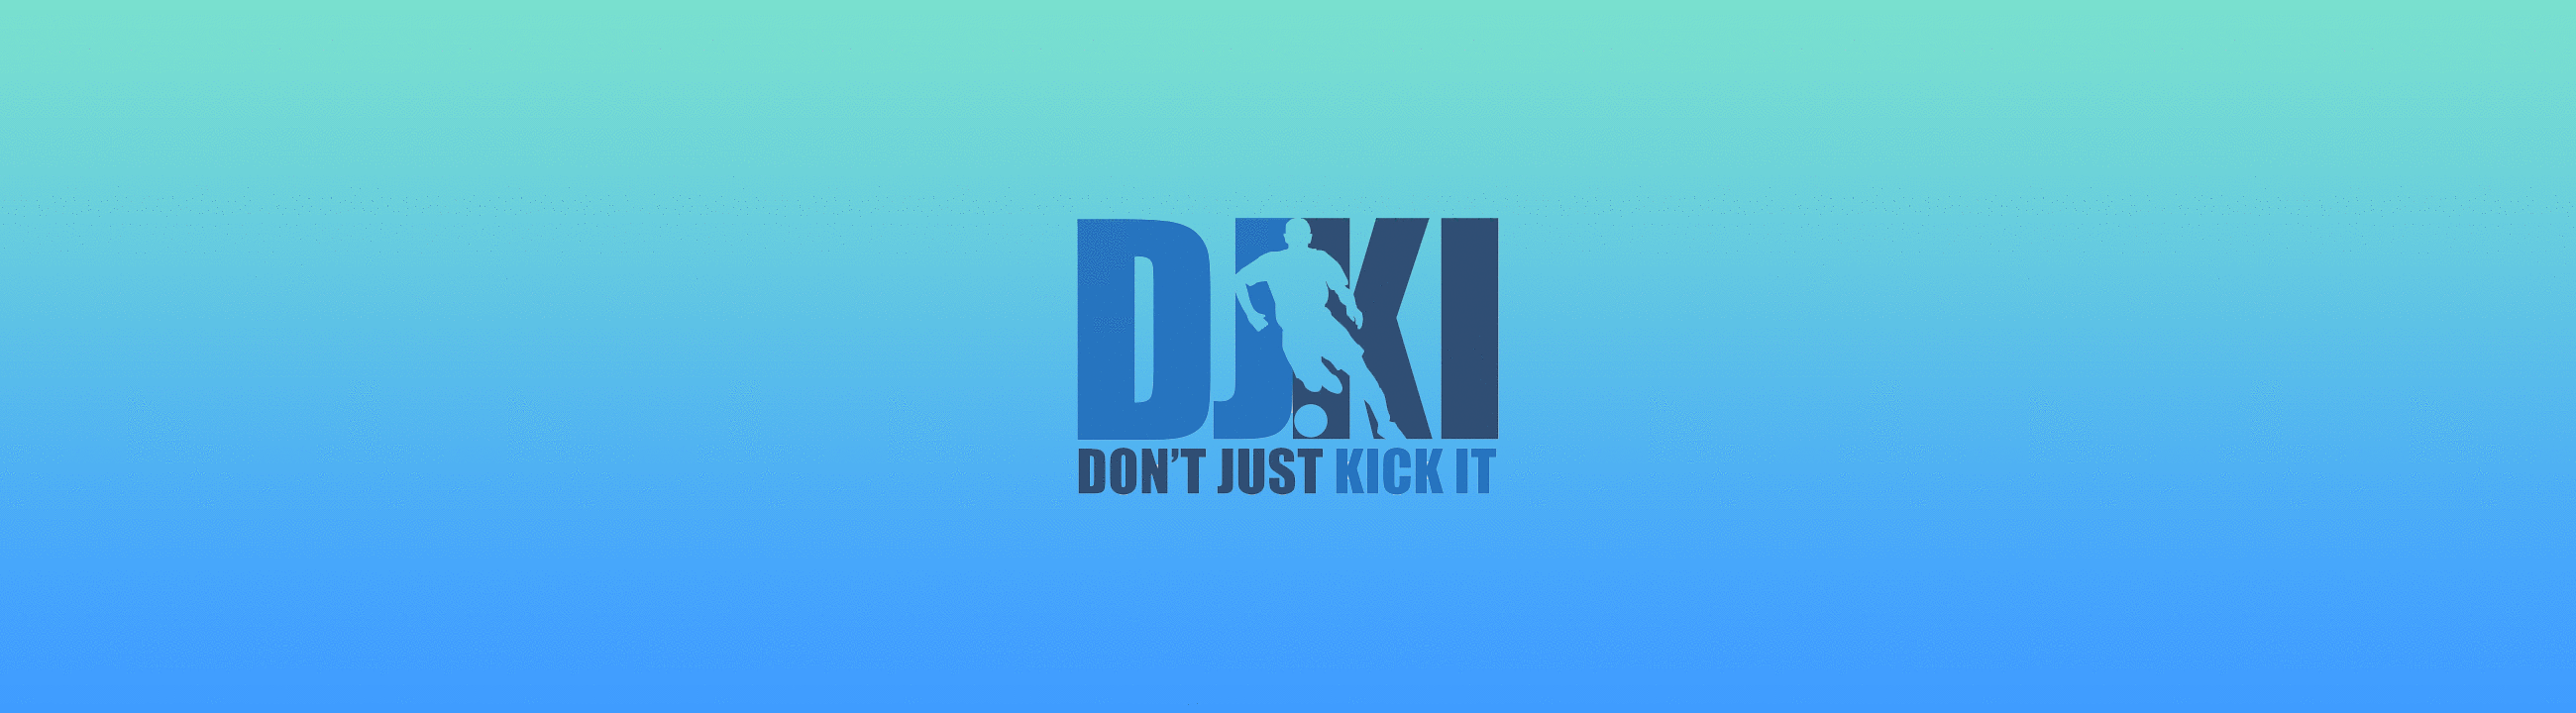 Dont Just Kick It